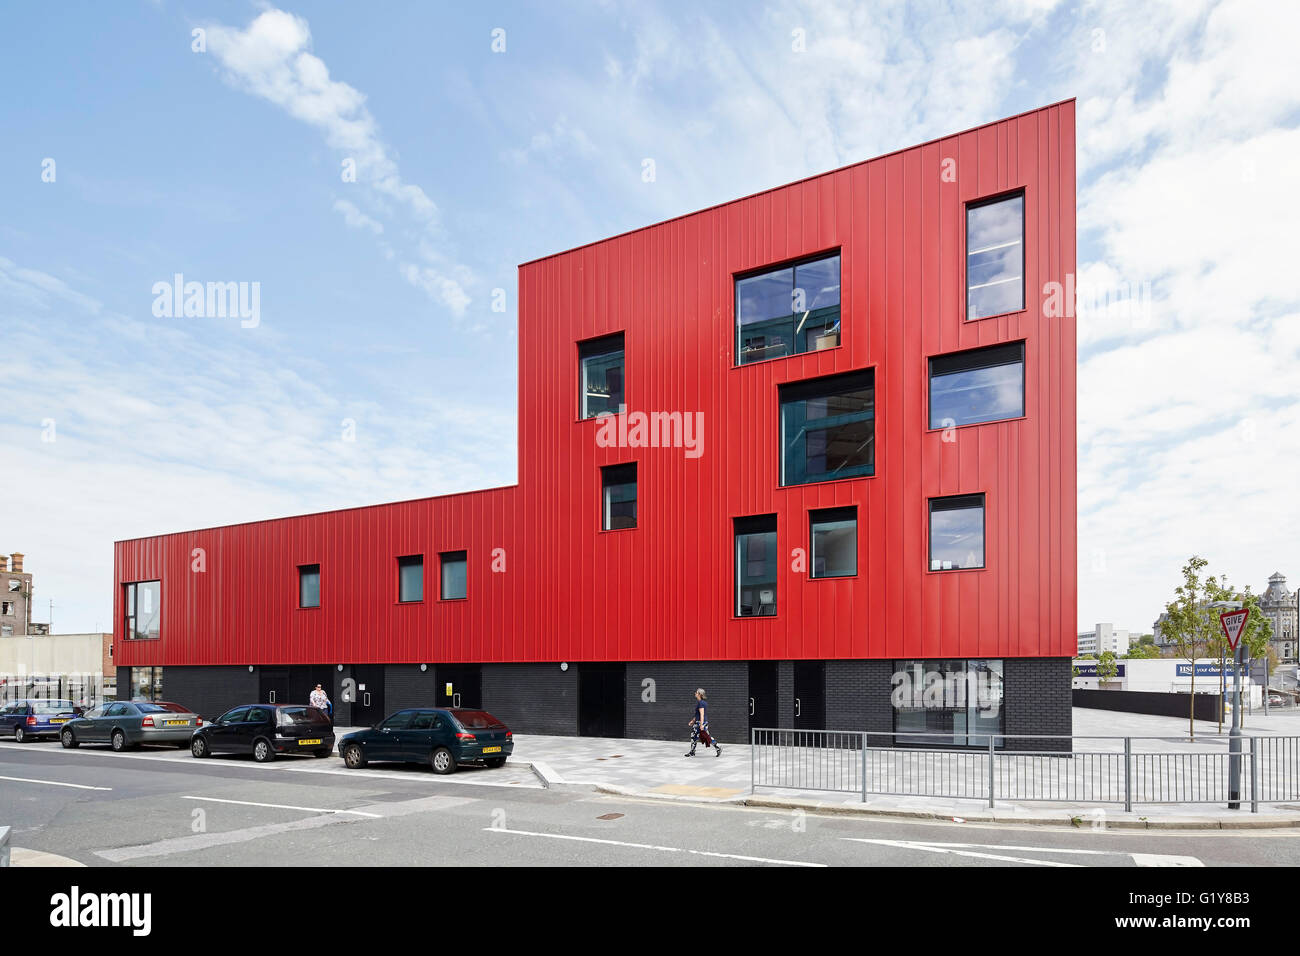 Fachada exterior con ventanas cuadradas y rectangulares. Escuela de Arte Creativo de Plymouth, Plymouth, Reino Unido. Arquitecto: Feilden Clegg Bradley Studios LLP, 2015. Foto de stock